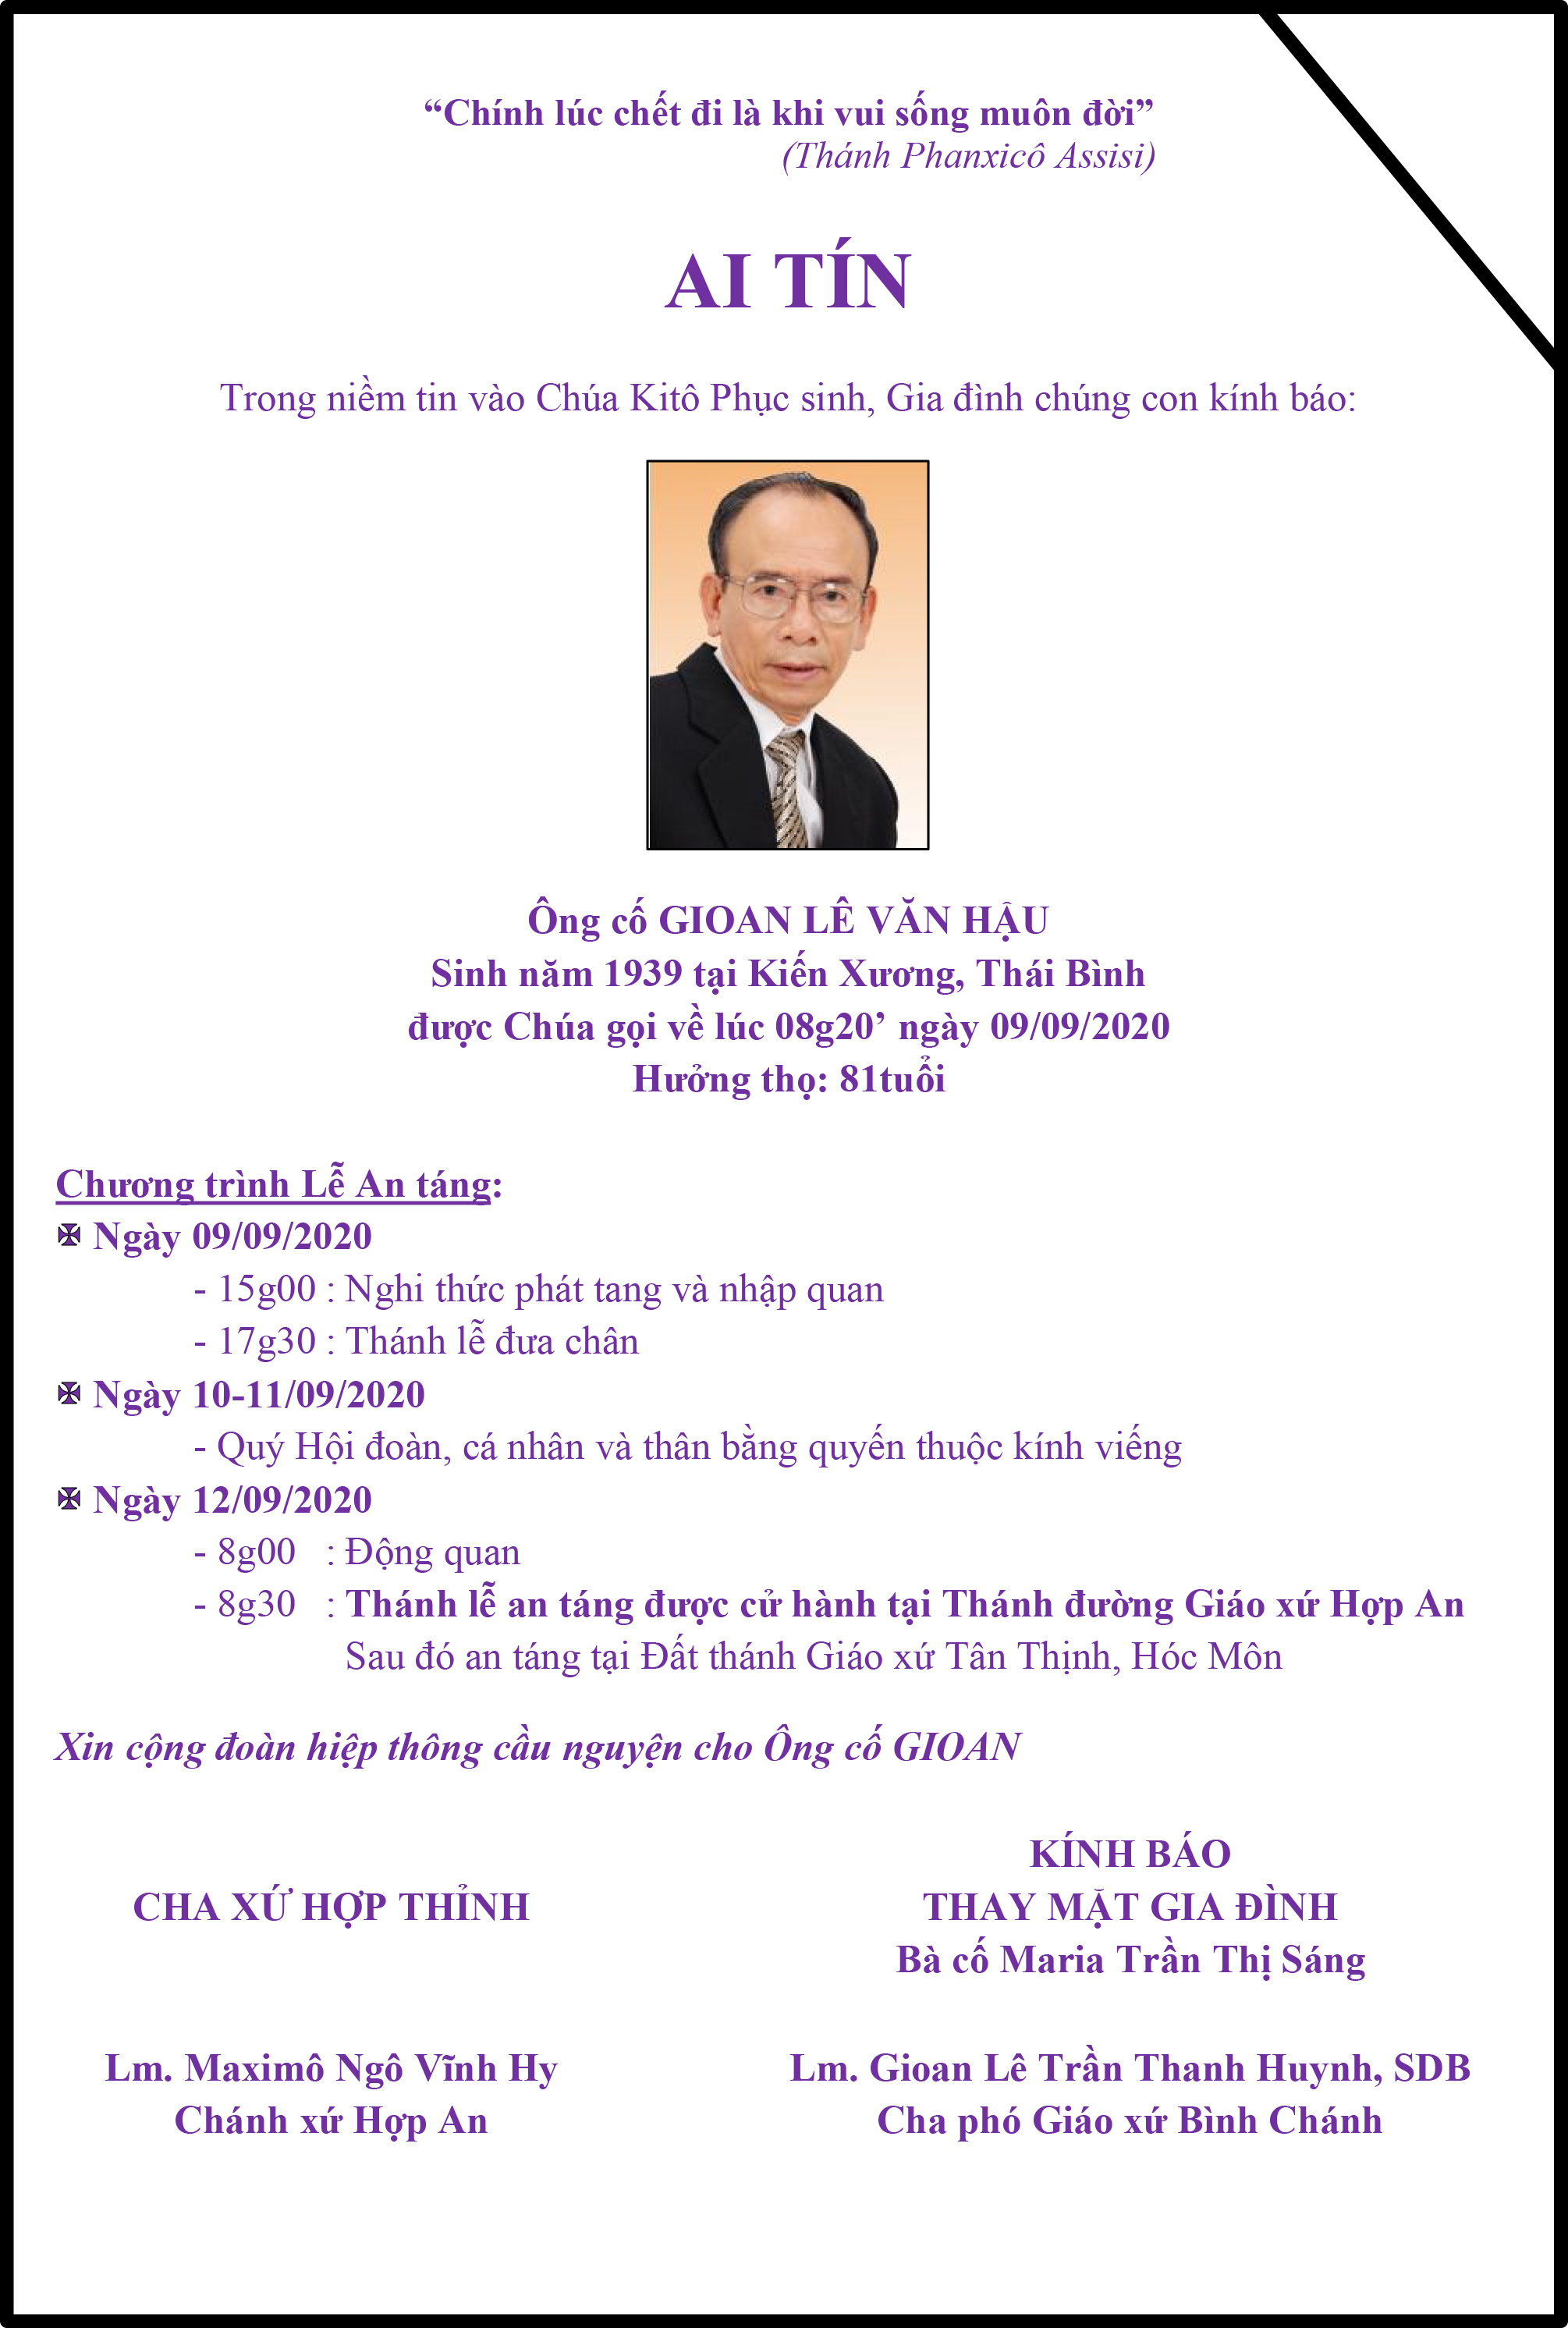 Cáo phó: thân phụ linh mục Lê Trần Thanh Huynh, SDB - Phó xứ Bình Chánh - qua đời, lễ an táng 8g30 thứ Bảy 12-9-2020 tại Nhà thờ Hợp An